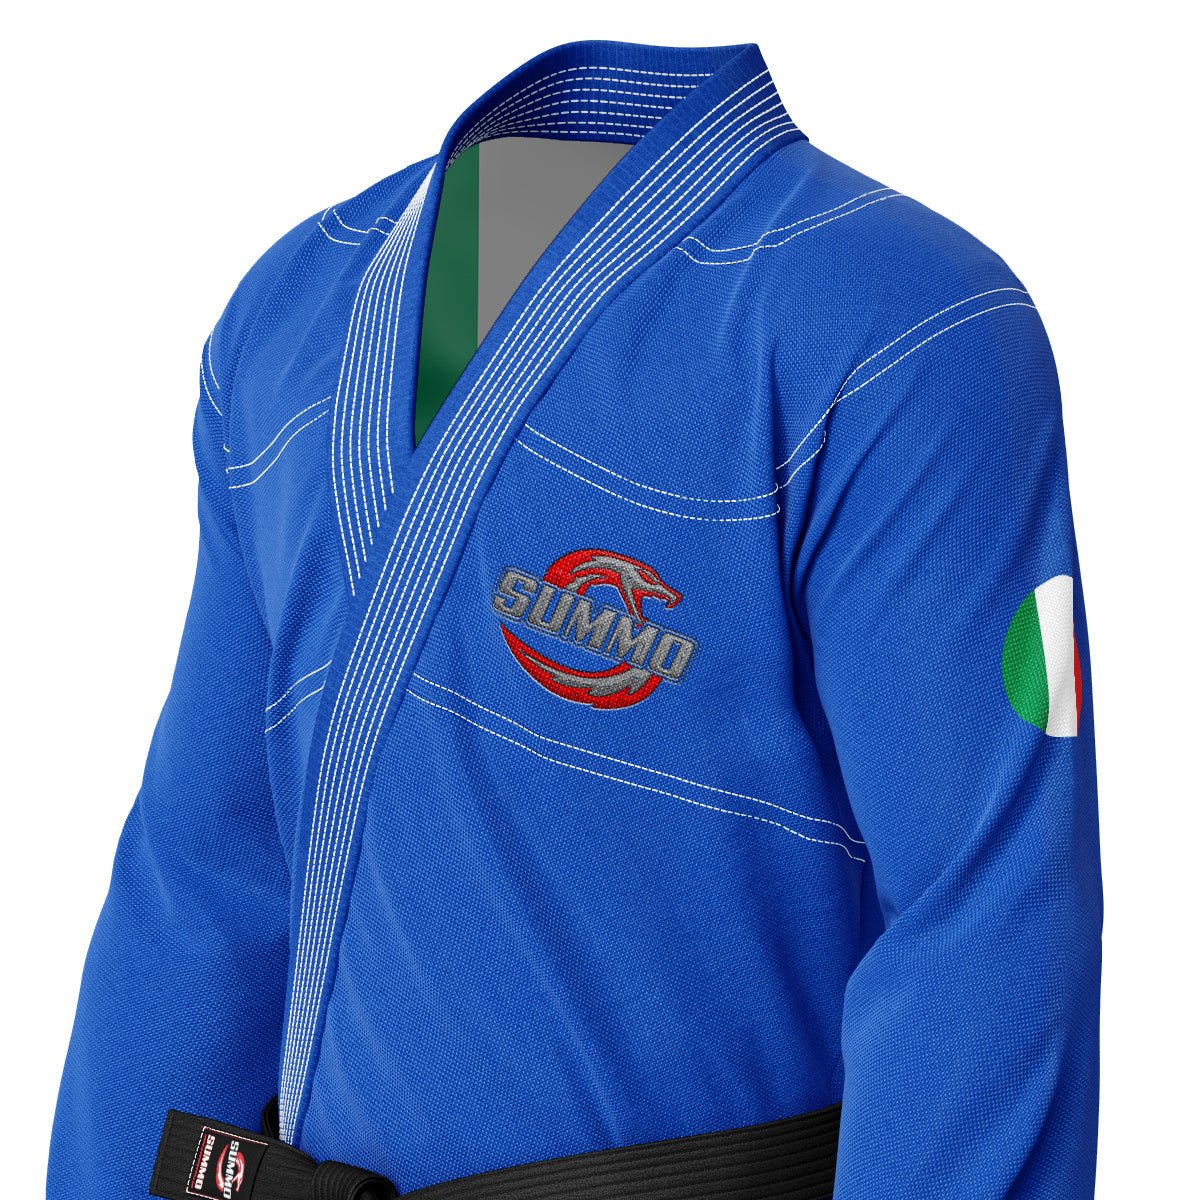 Italian Blue Sublimation Brazilian Jiu Jitsu Gi (BJJ GI) - Summo Sports